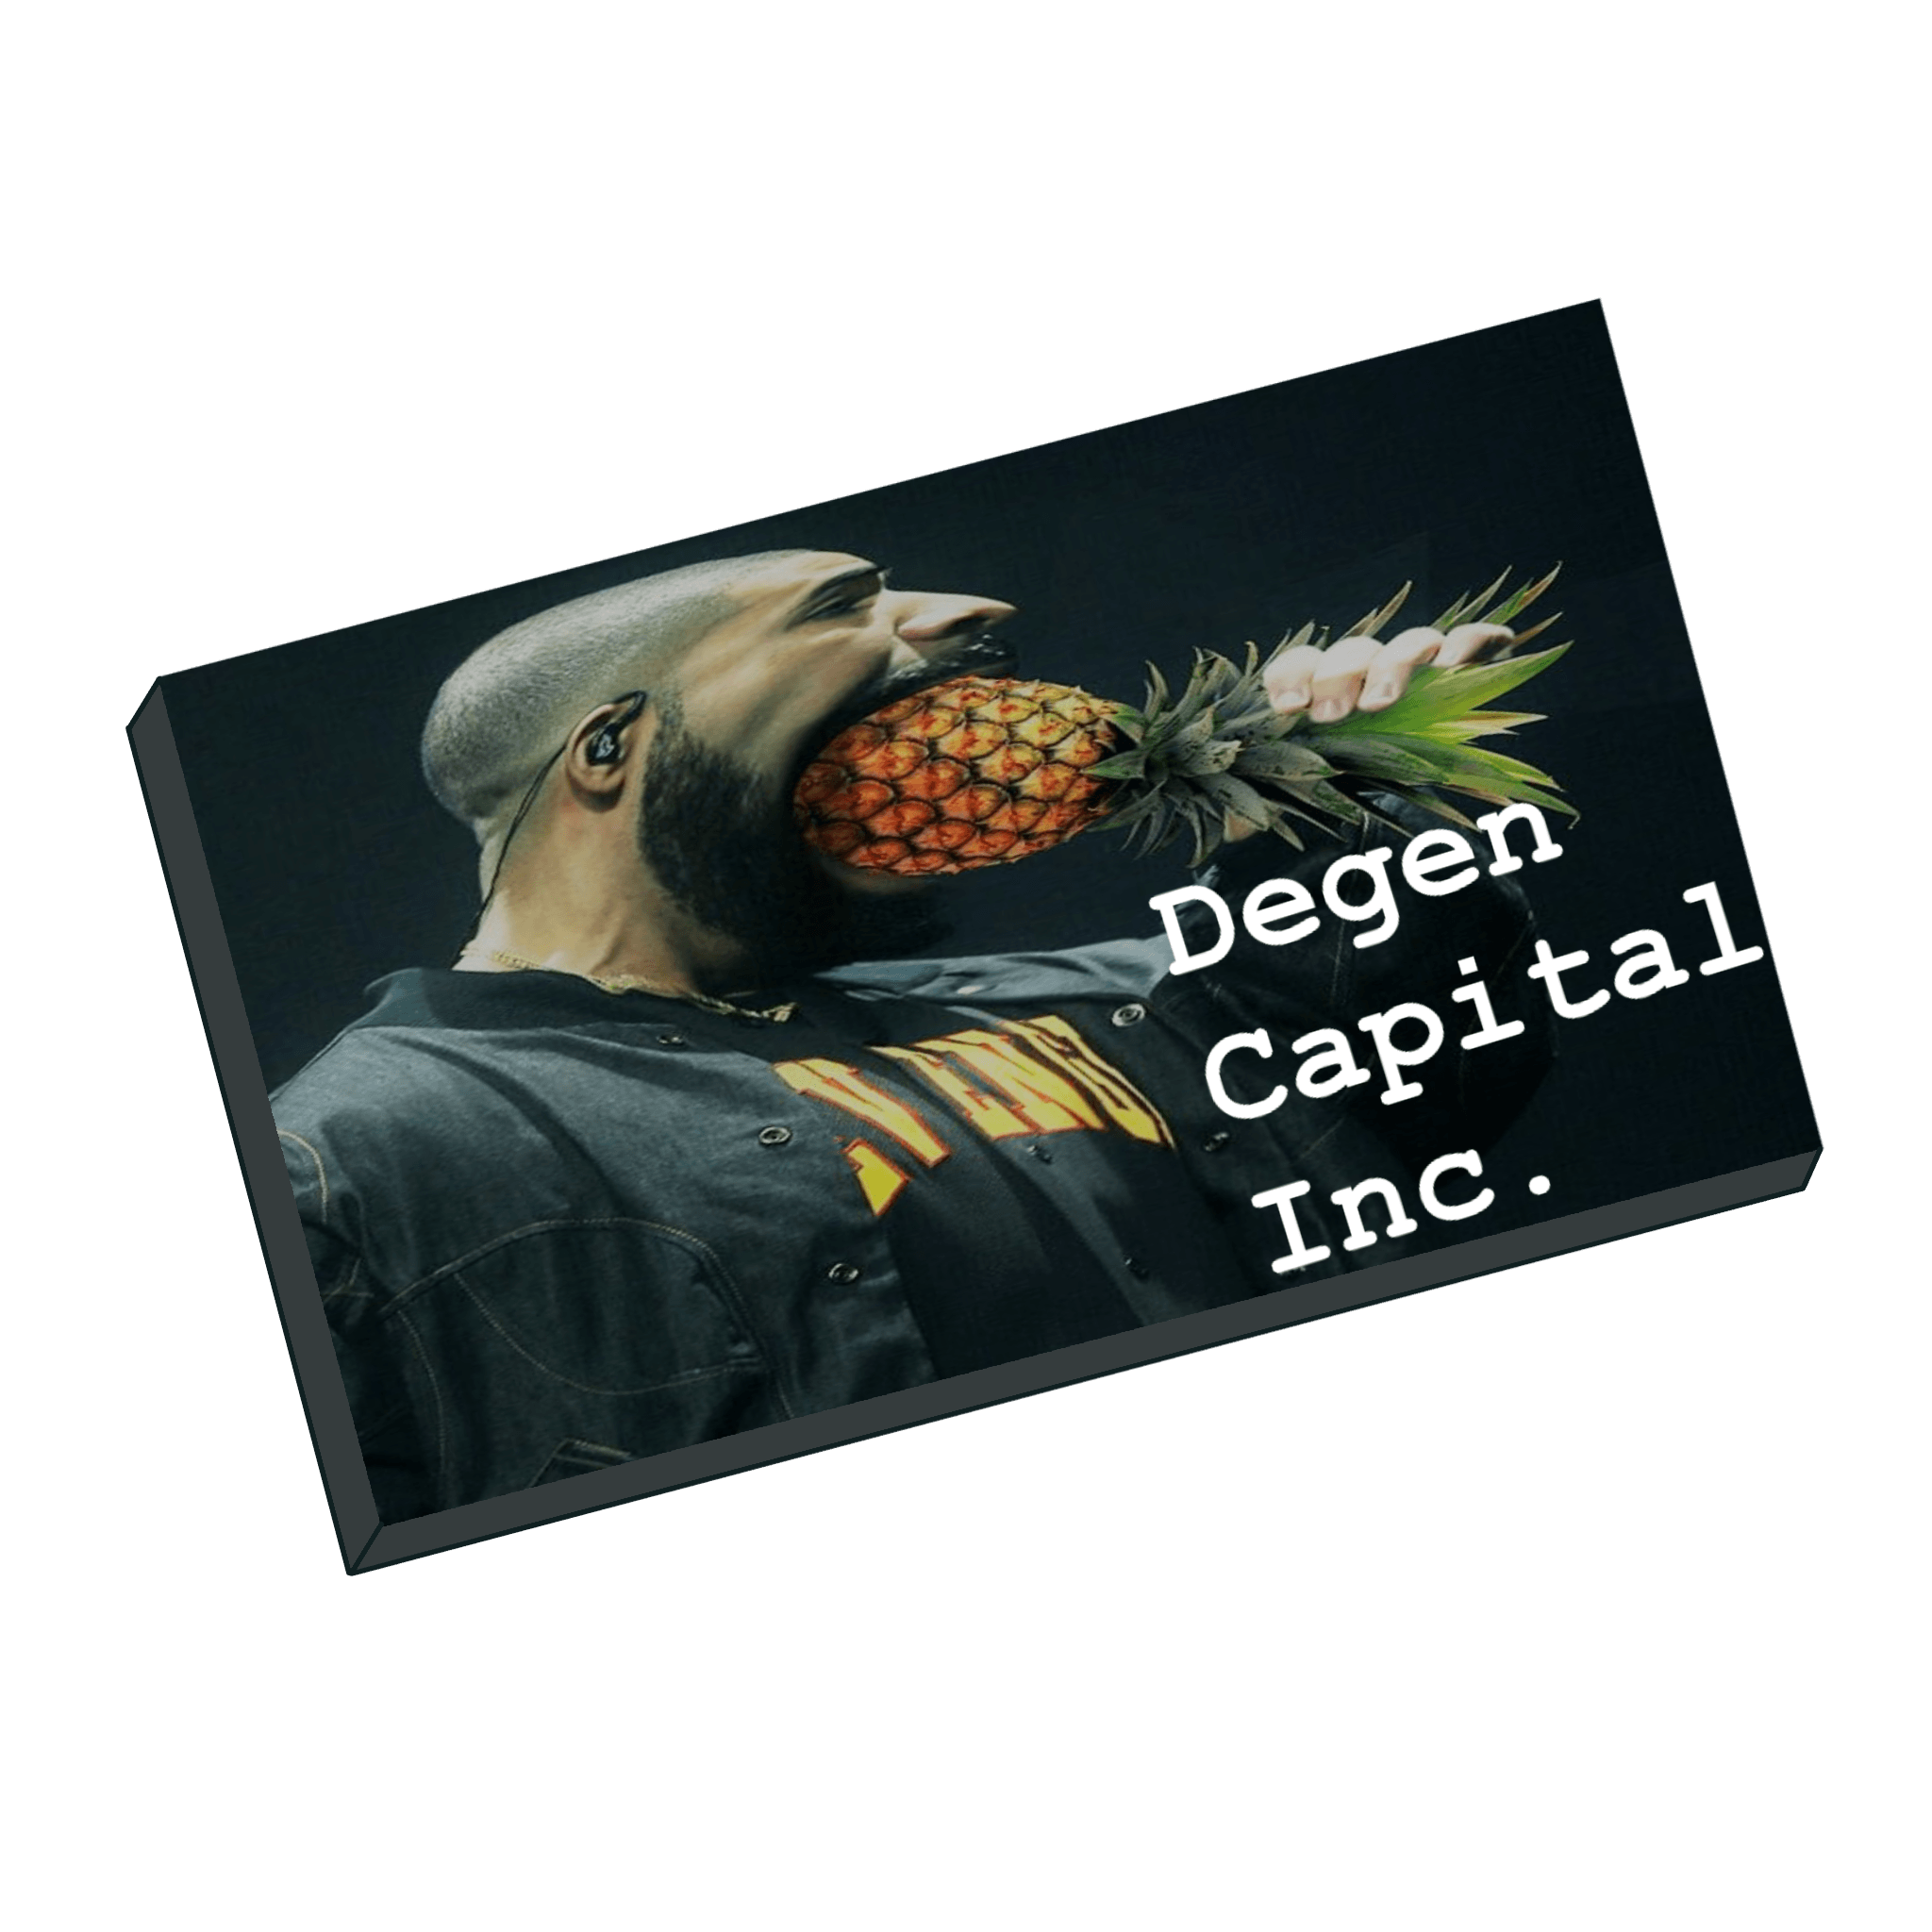 DegenCapital